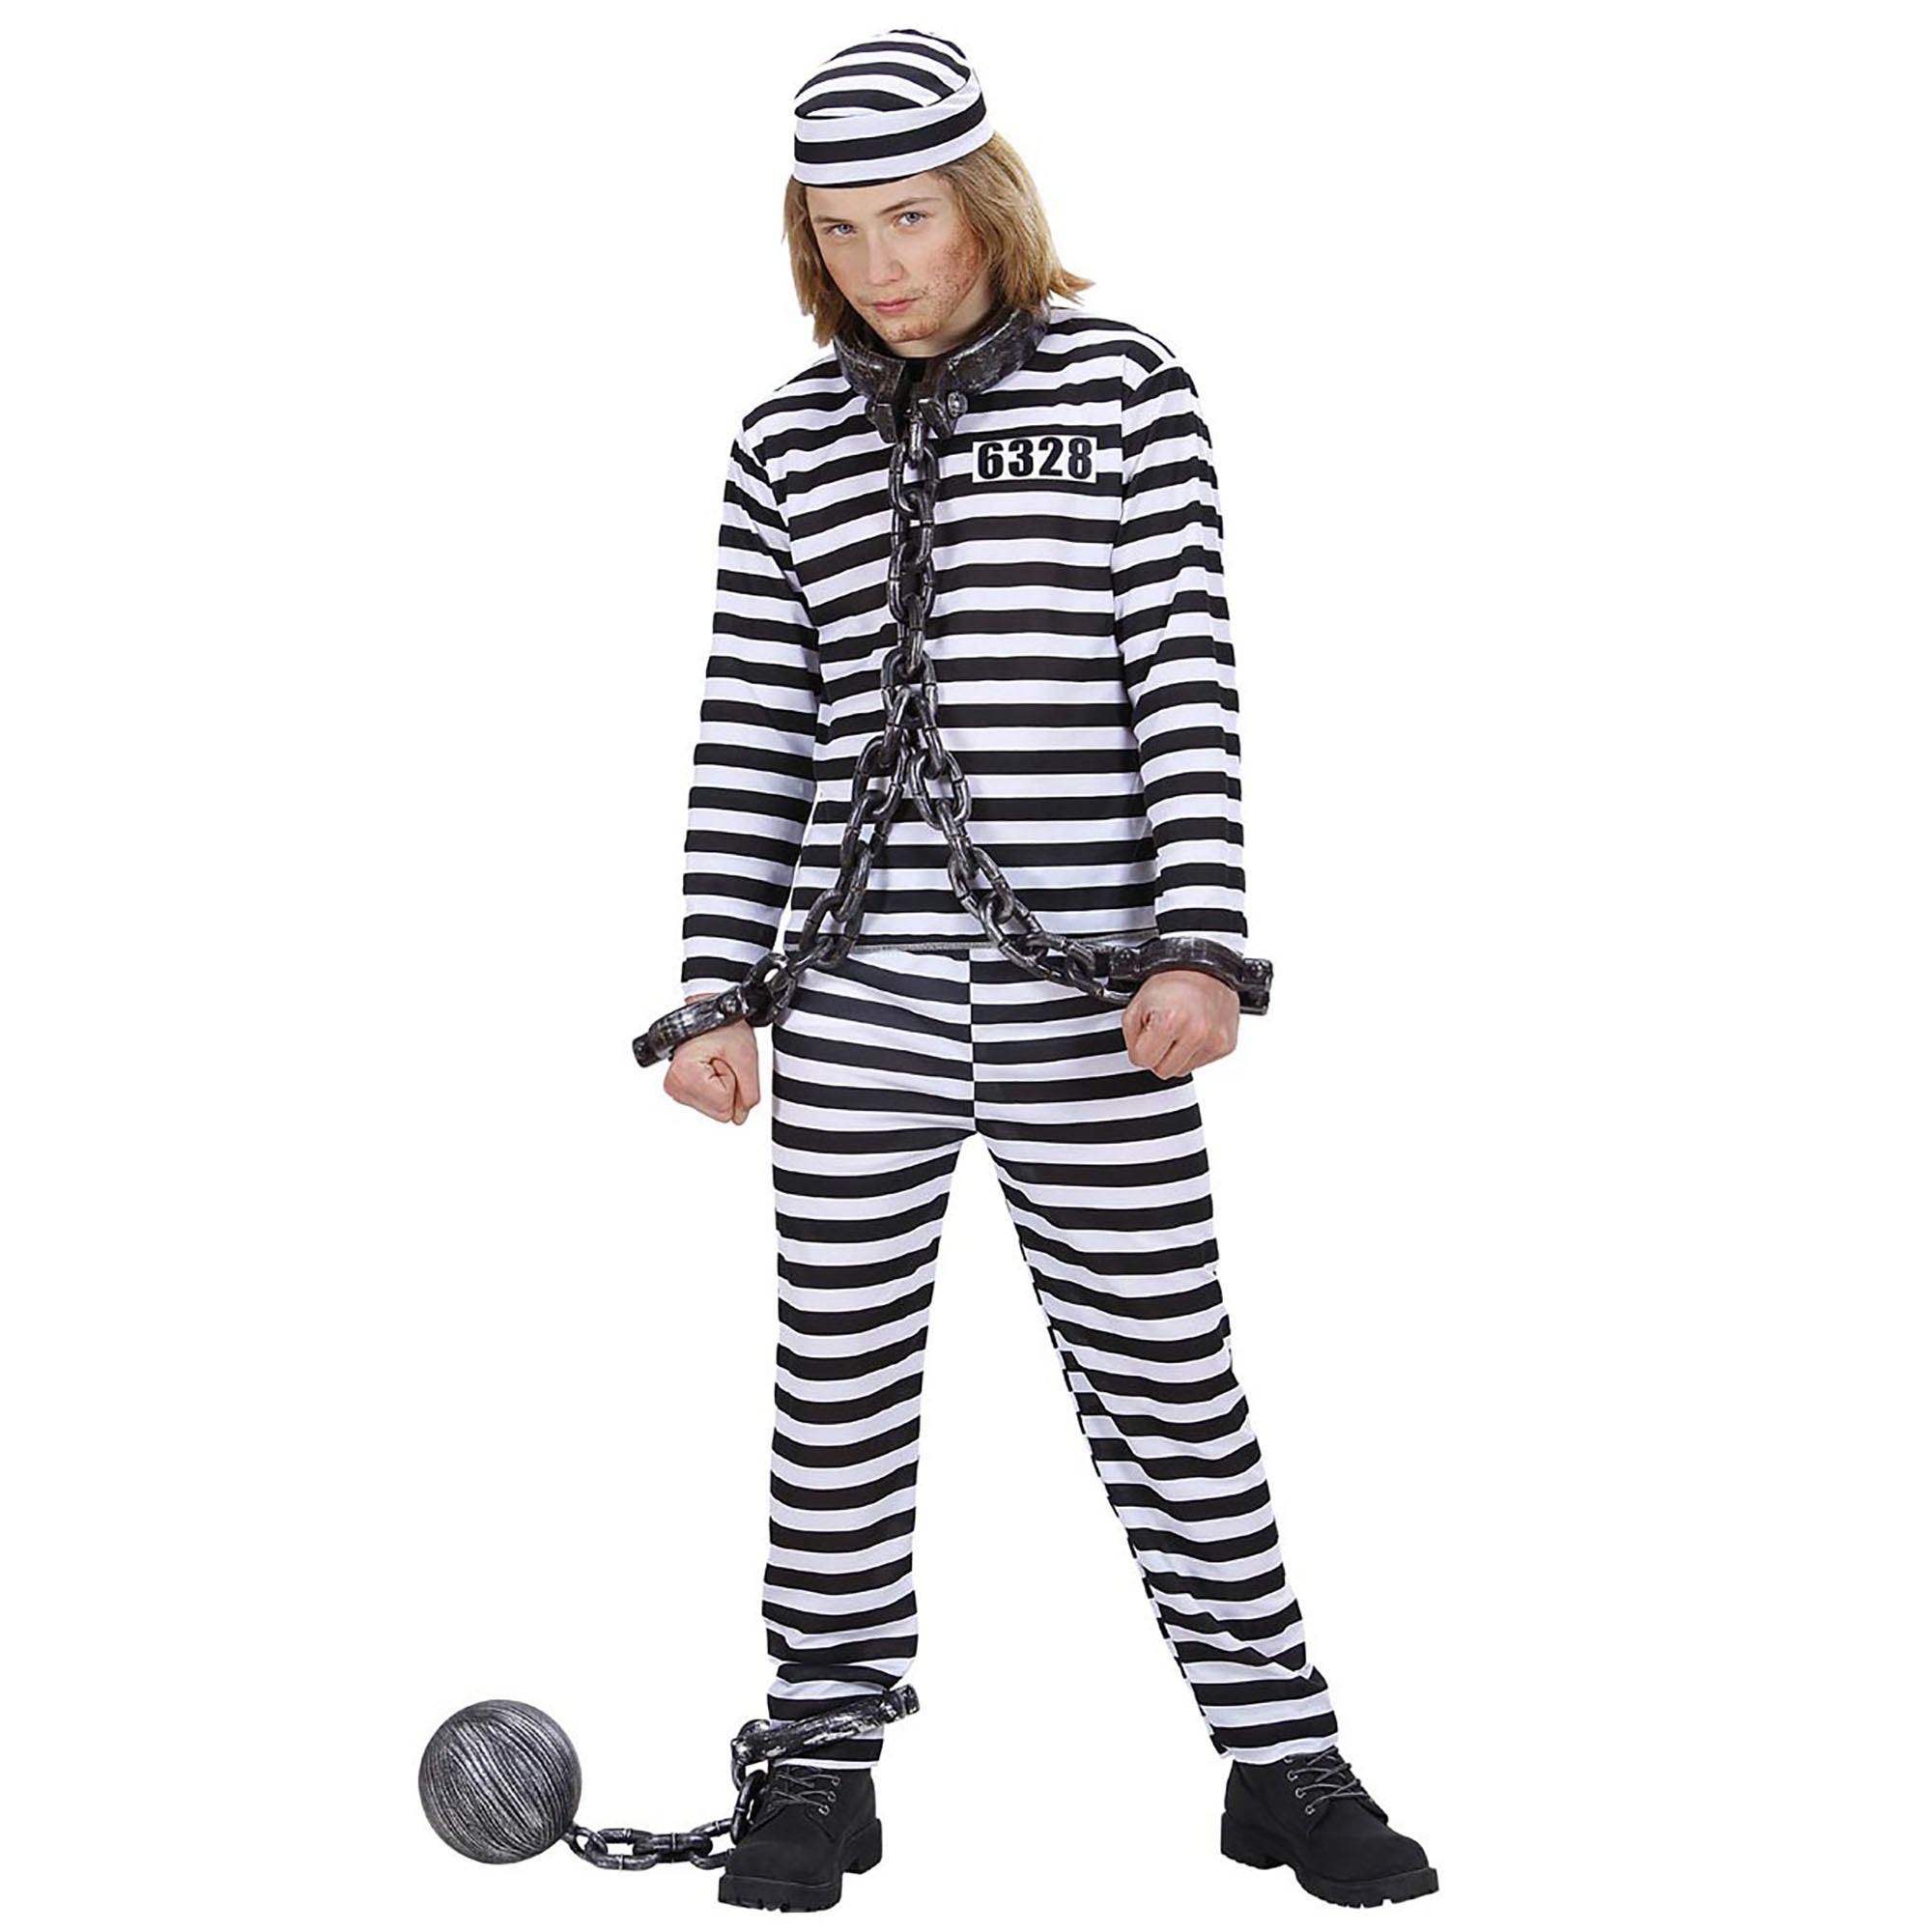 Zwart en wit gevangene kostuum voor kinderen - Verkleedkleding